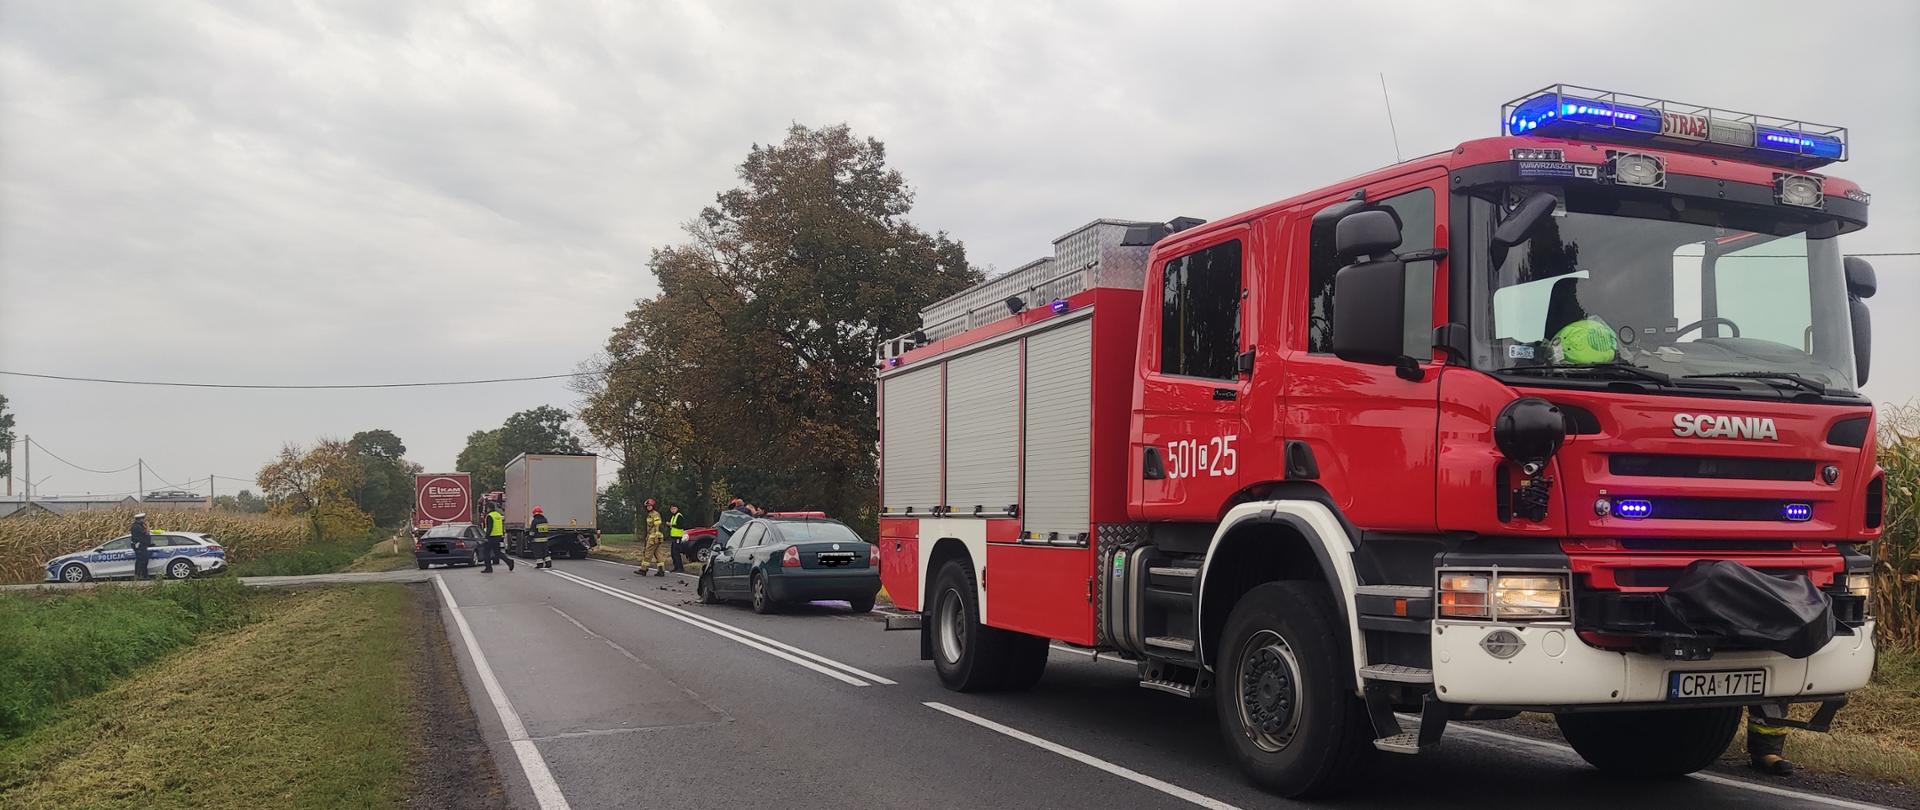 
Zdjęcie przedstawia na pierwszym planie samochód ciężarowy straży pożarnej koloru czerwonego, samochód osobowy oraz ciężarowy z naczepą po kolizji drogowej, radiowóz policyjny, oraz policjantów i strażaków podczas usuwania skutków kolizji drogowej.
